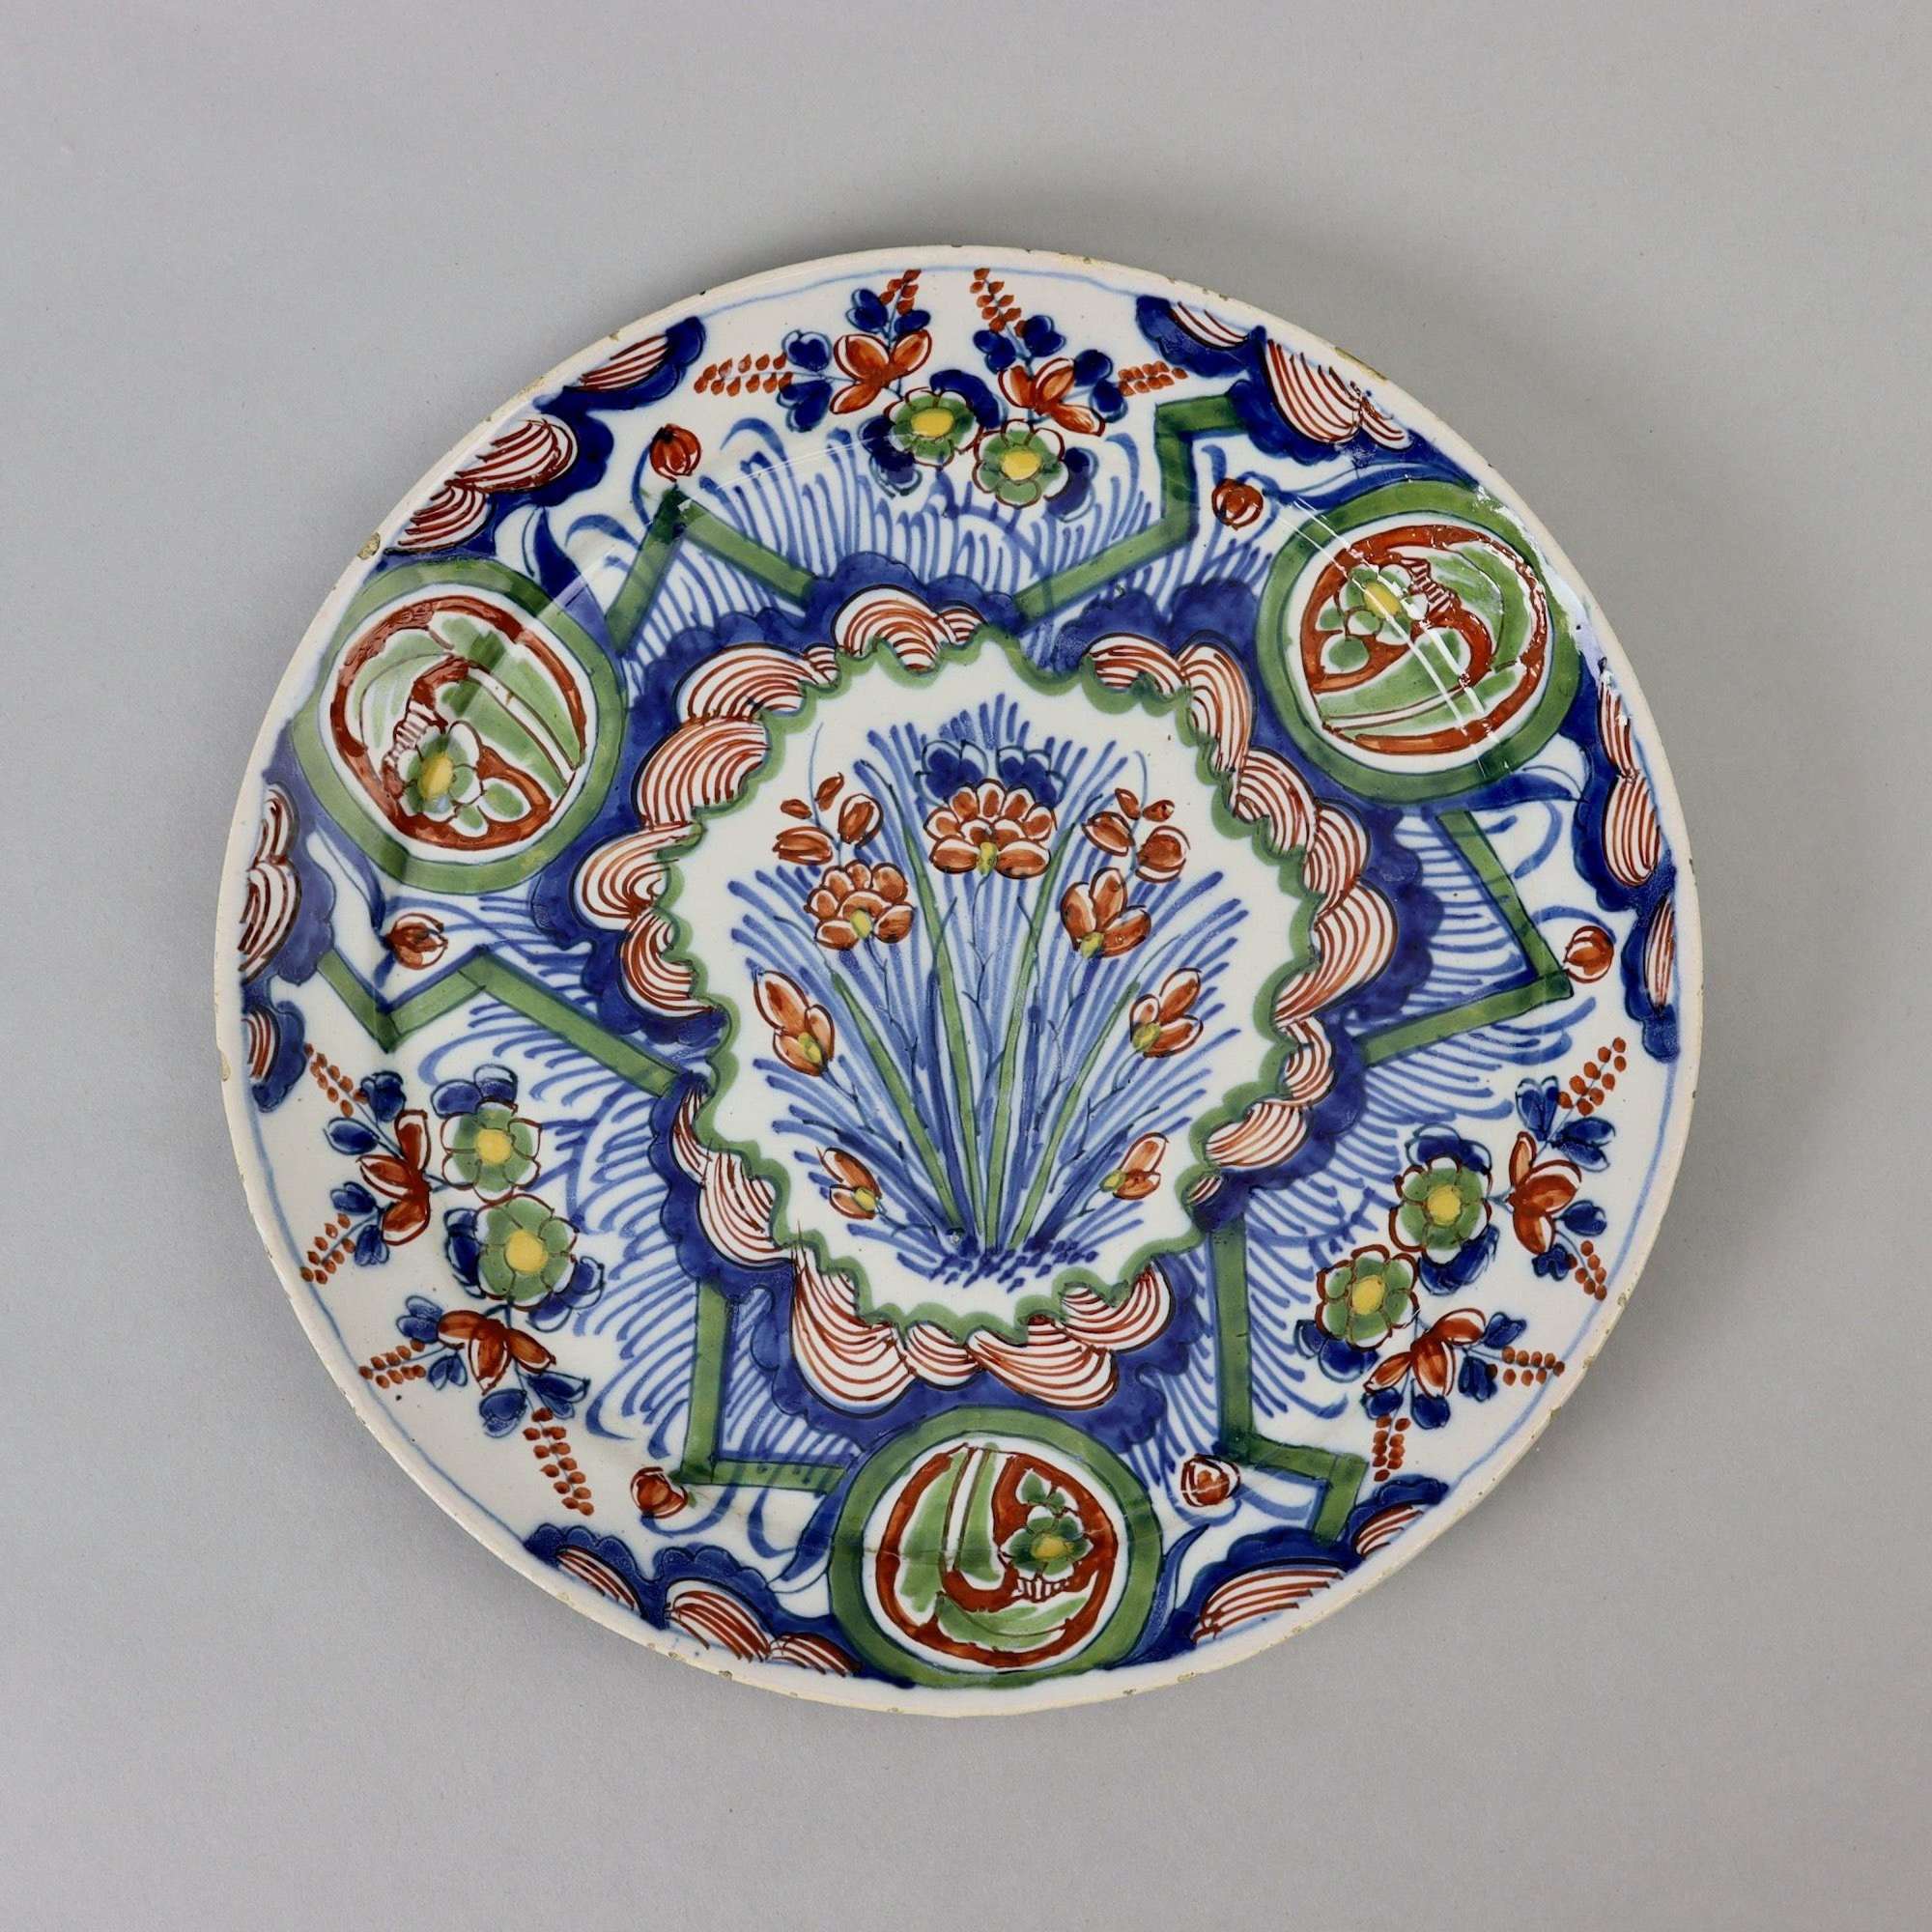 Colourful 18th Century Delft Plate